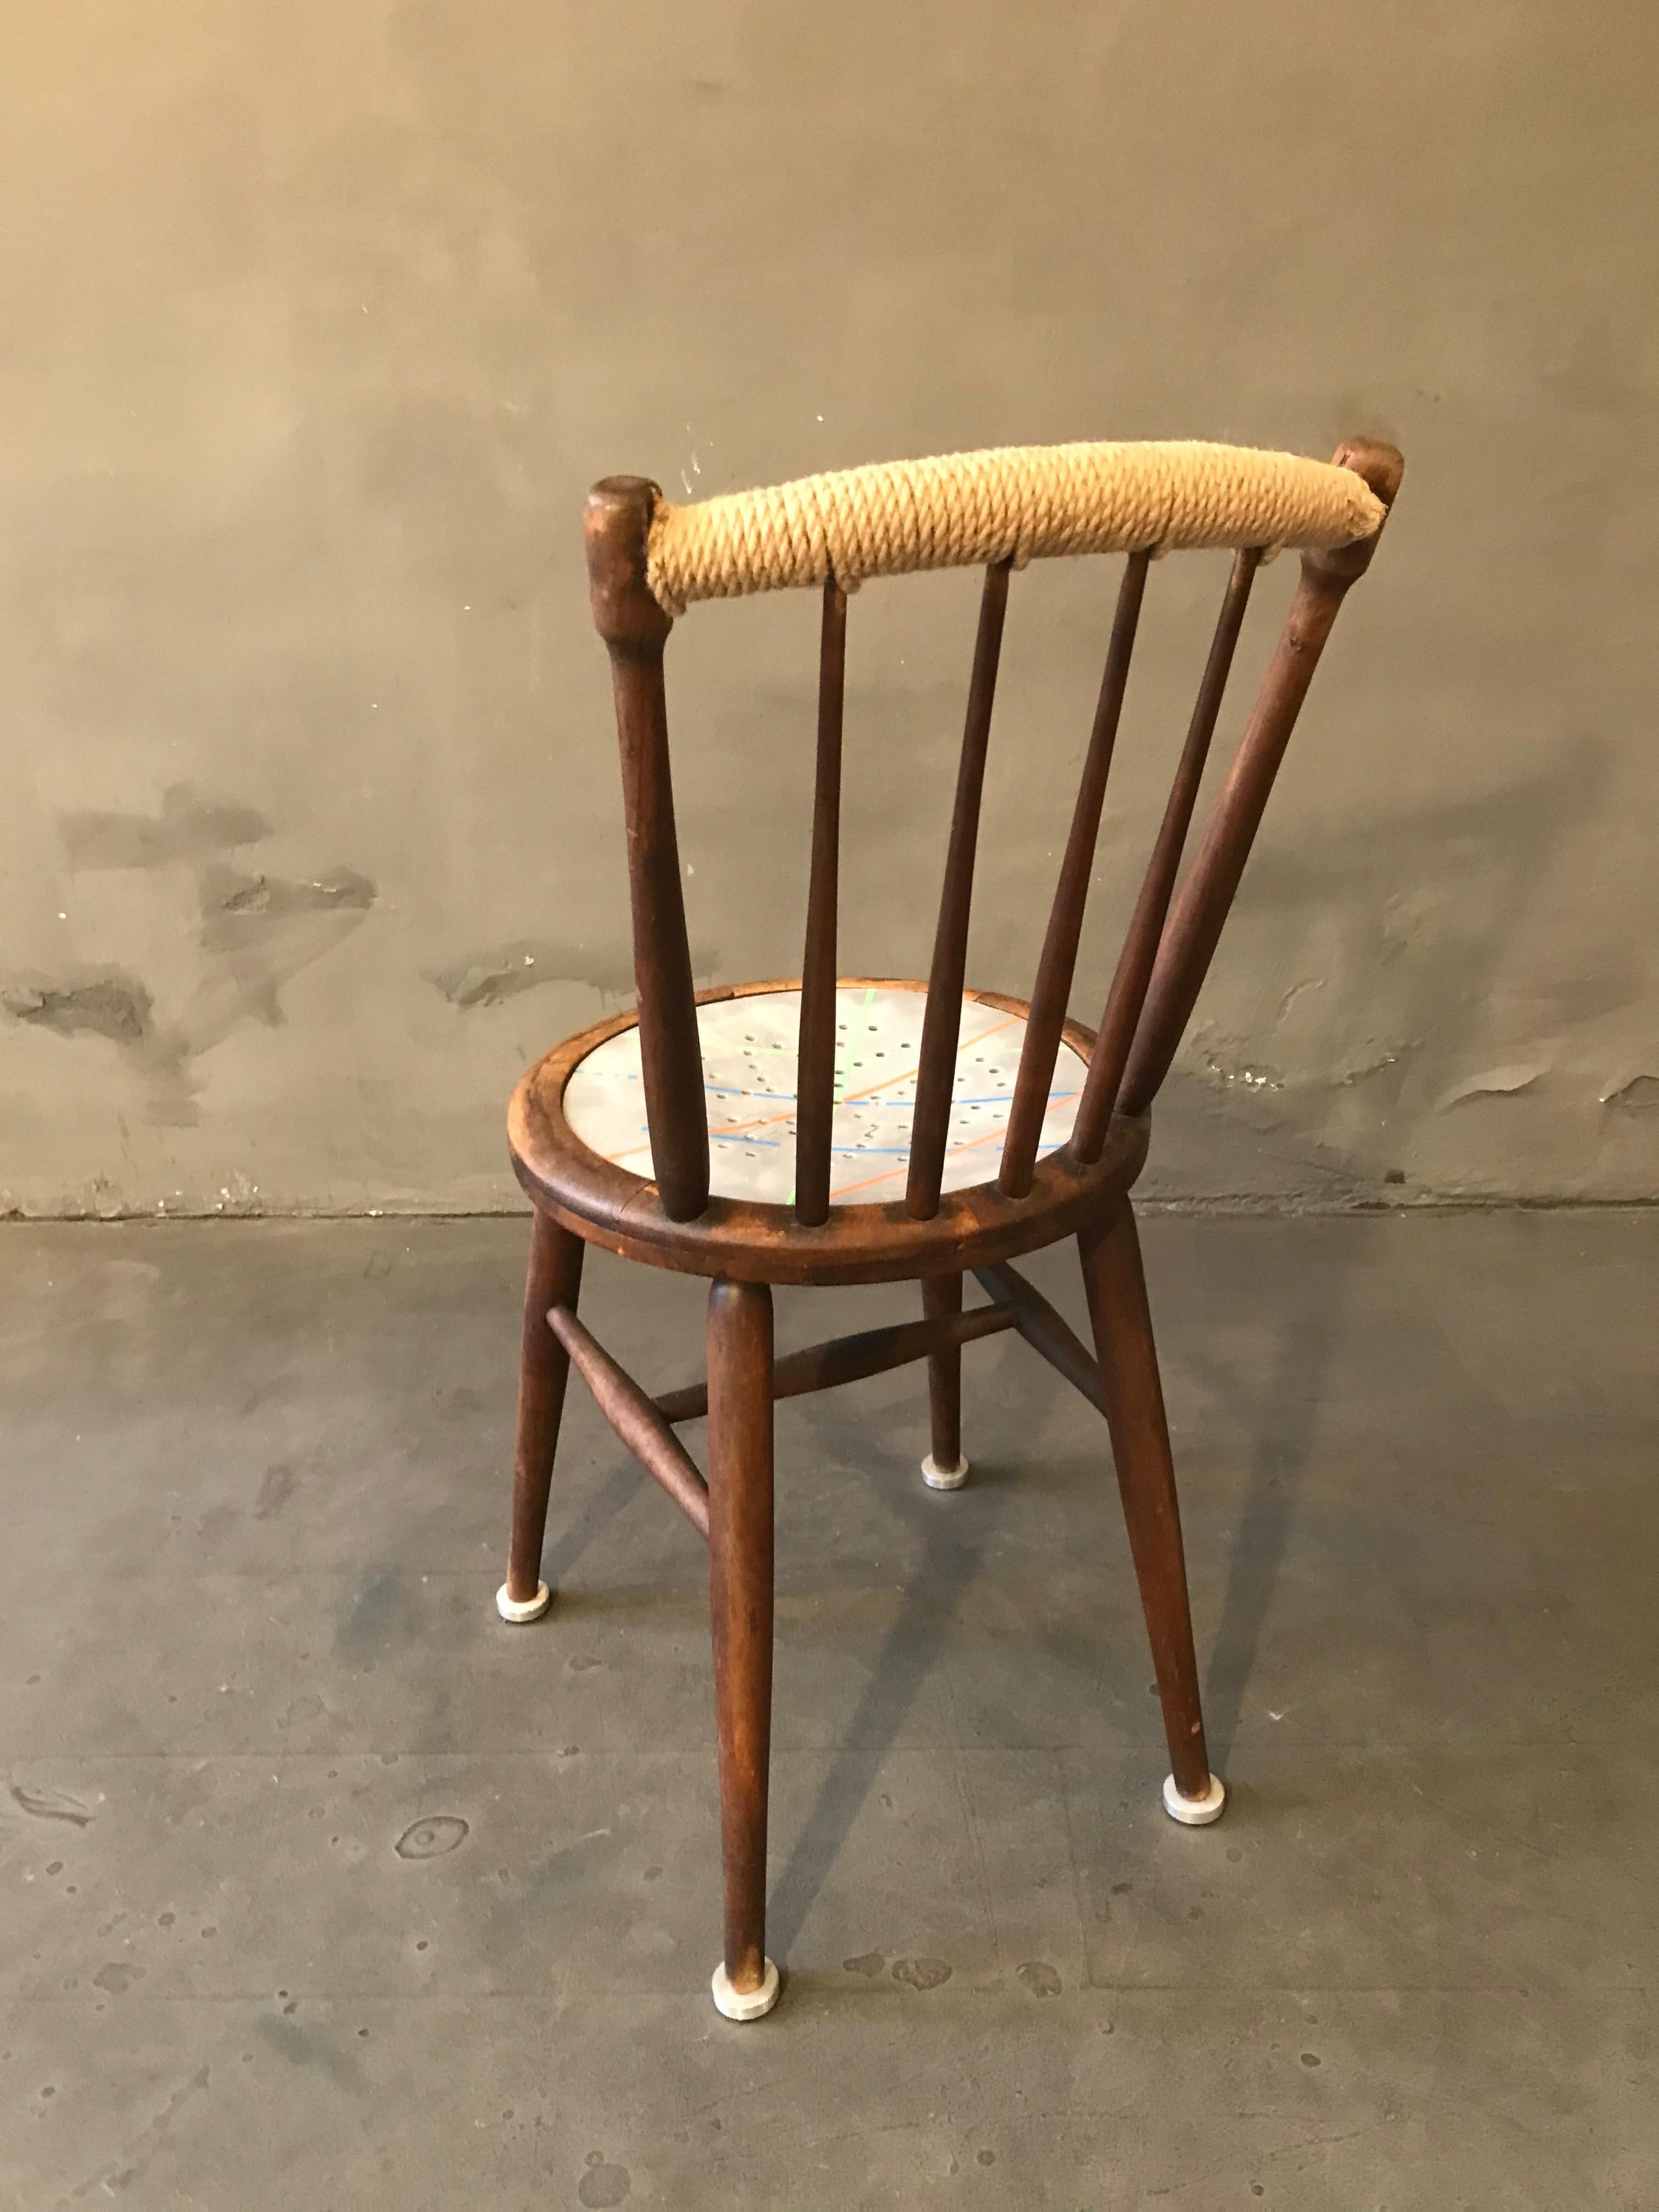 Klassischer Thonet Stuhl von Markus Friedrich Staab, mit additiven Füßen, handbemalter Sitz, mehrfach lackiert.

Ich lerne aus einer Vergangenheit, die für mich geschaffen wurde, eine Grundlage, auf der ich meine eigene Arbeit aufbauen kann.
Und